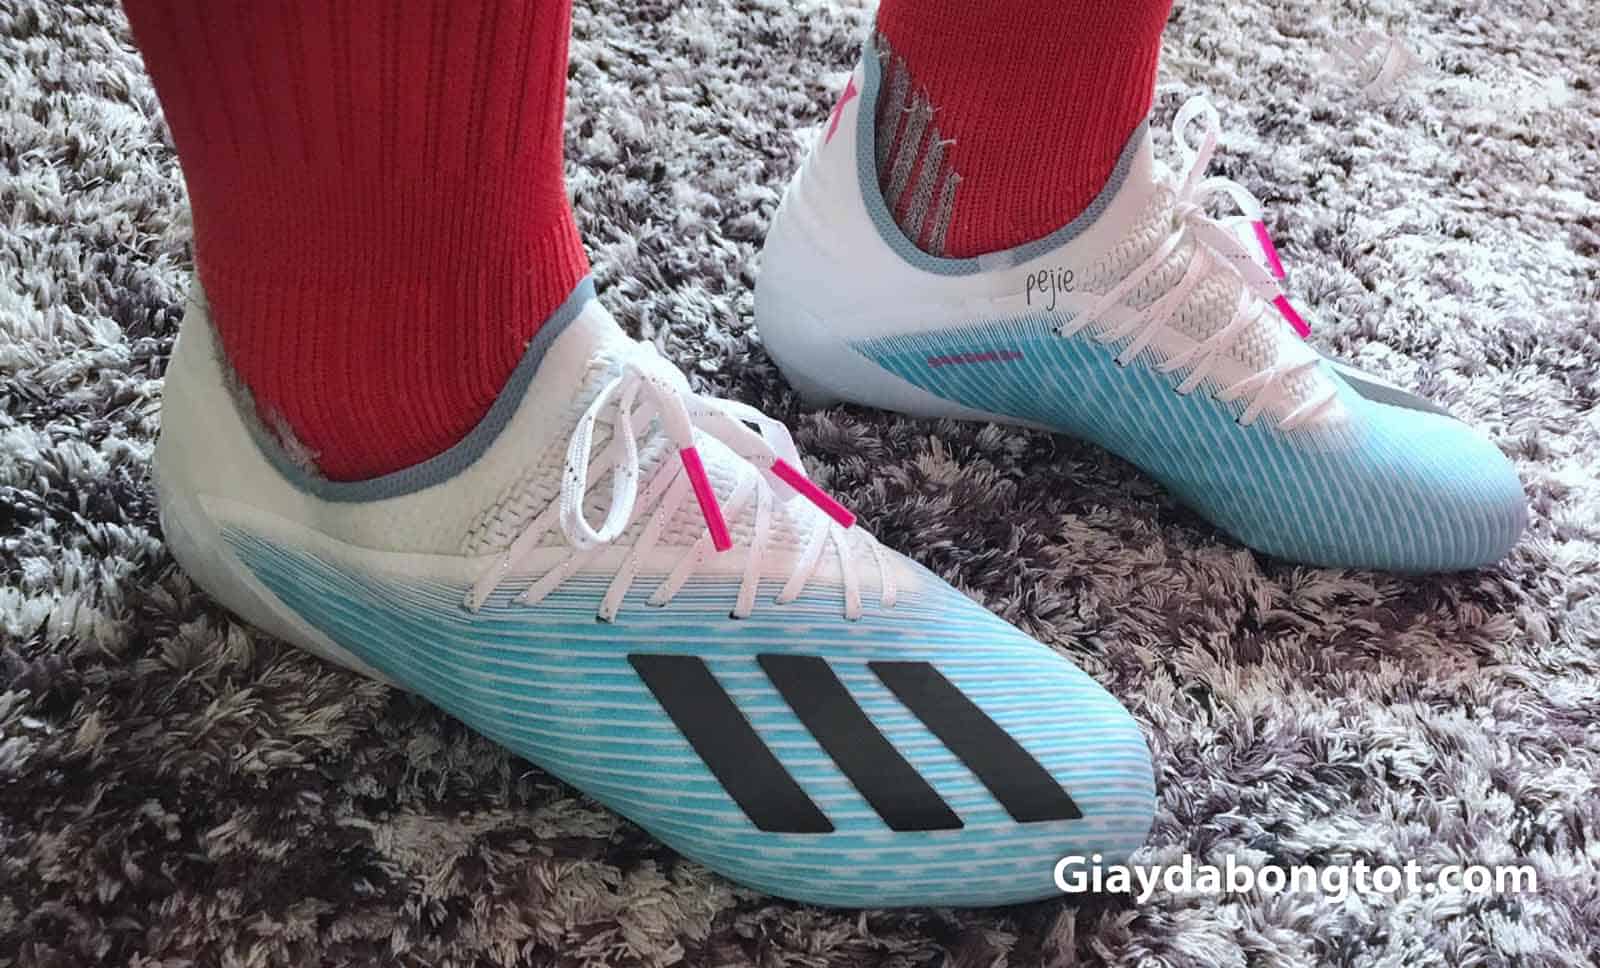 Phiên bản giày đá bóng Adidas X19.1 được ra mắt với sự xuất hiện của chất liệu vải sợi dệt